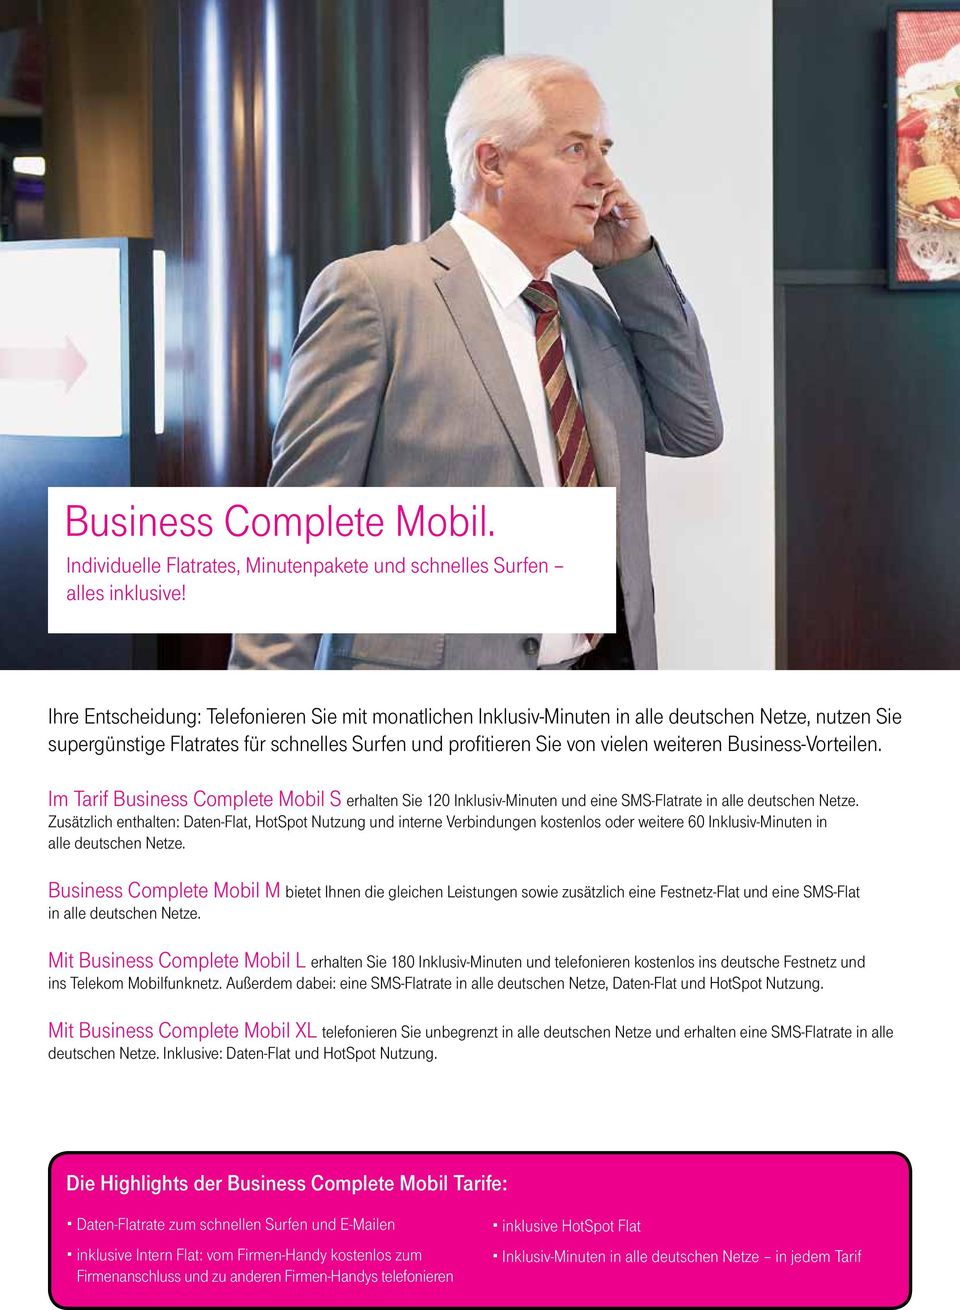 Business-Vorteilen. Im Tarif Business Complete Mobil S erhalten Sie 120 Inklusiv-Minuten und eine SMS-Flatrate in alle deutschen Netze.